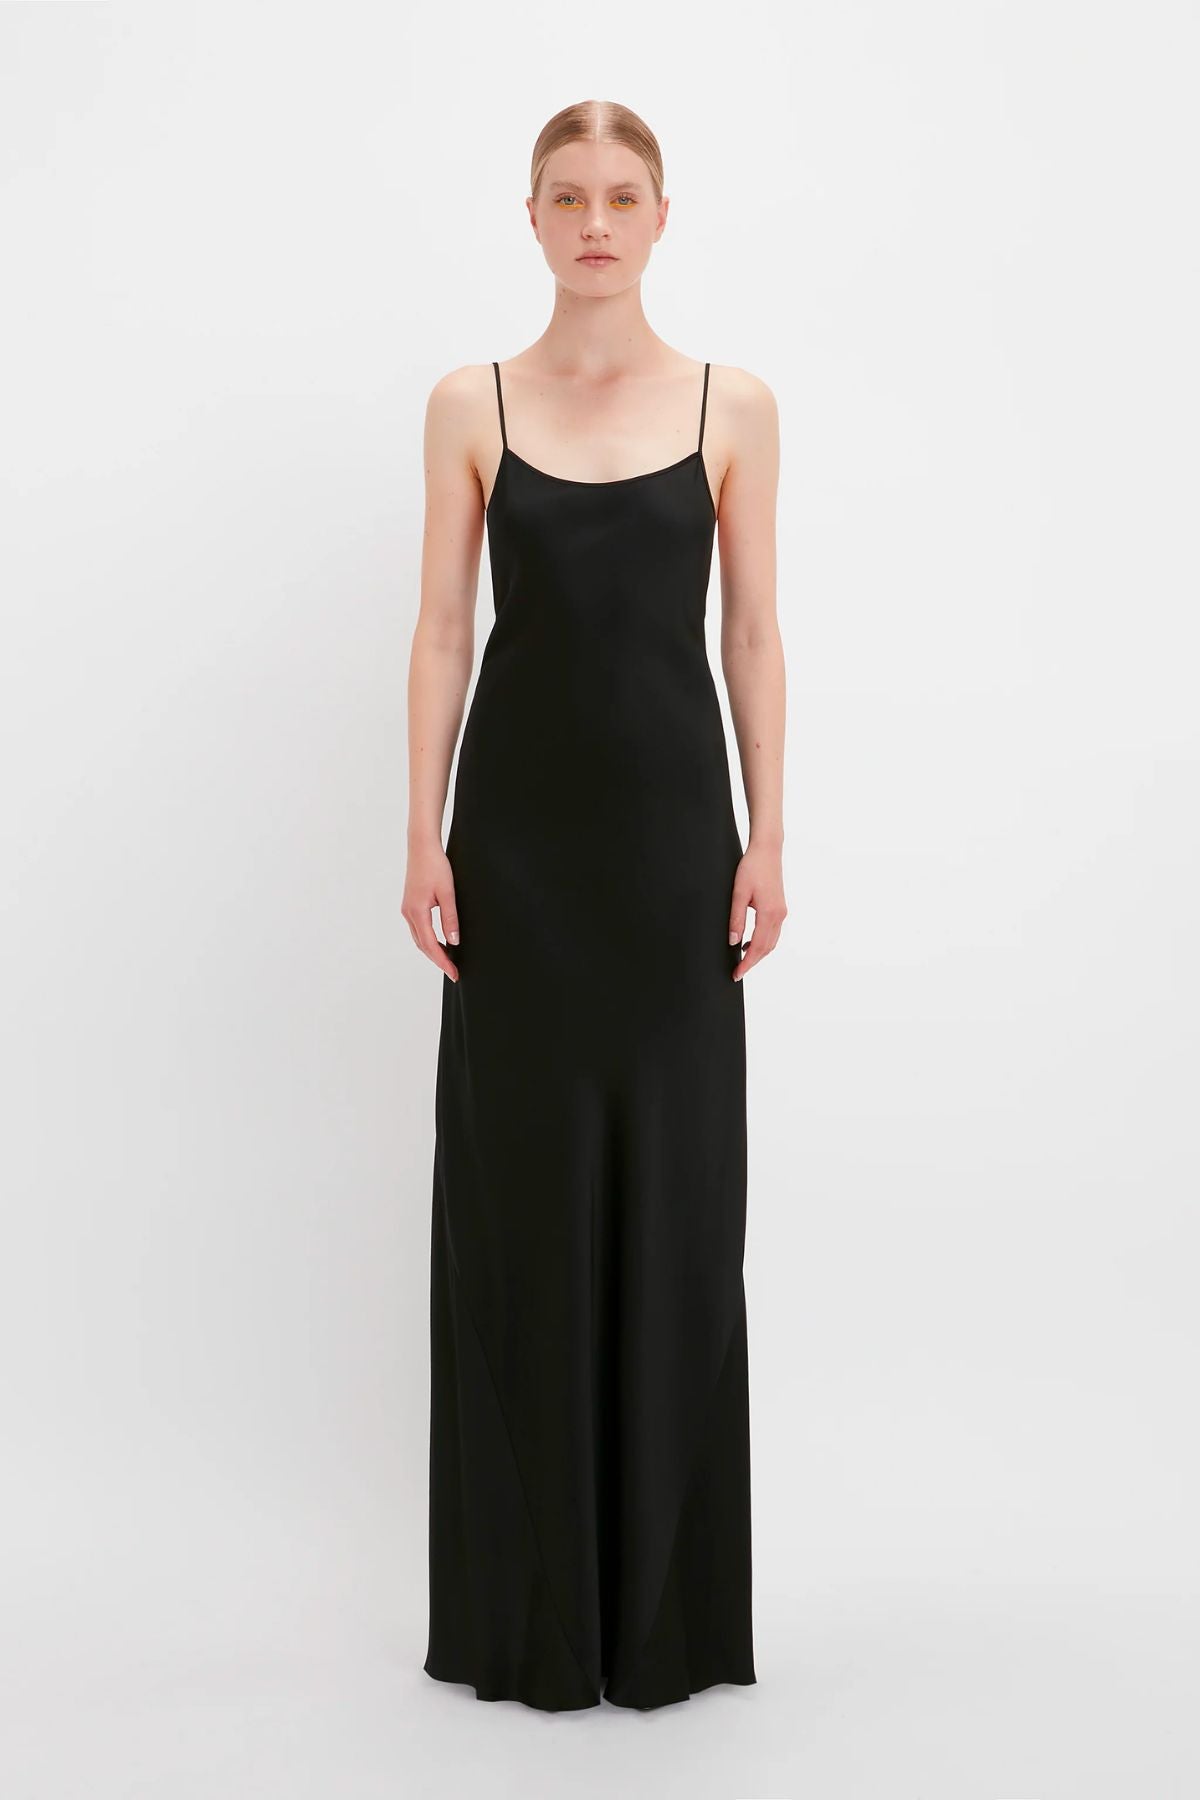 Victoria Beckham Floor Length Cami Dress - Black